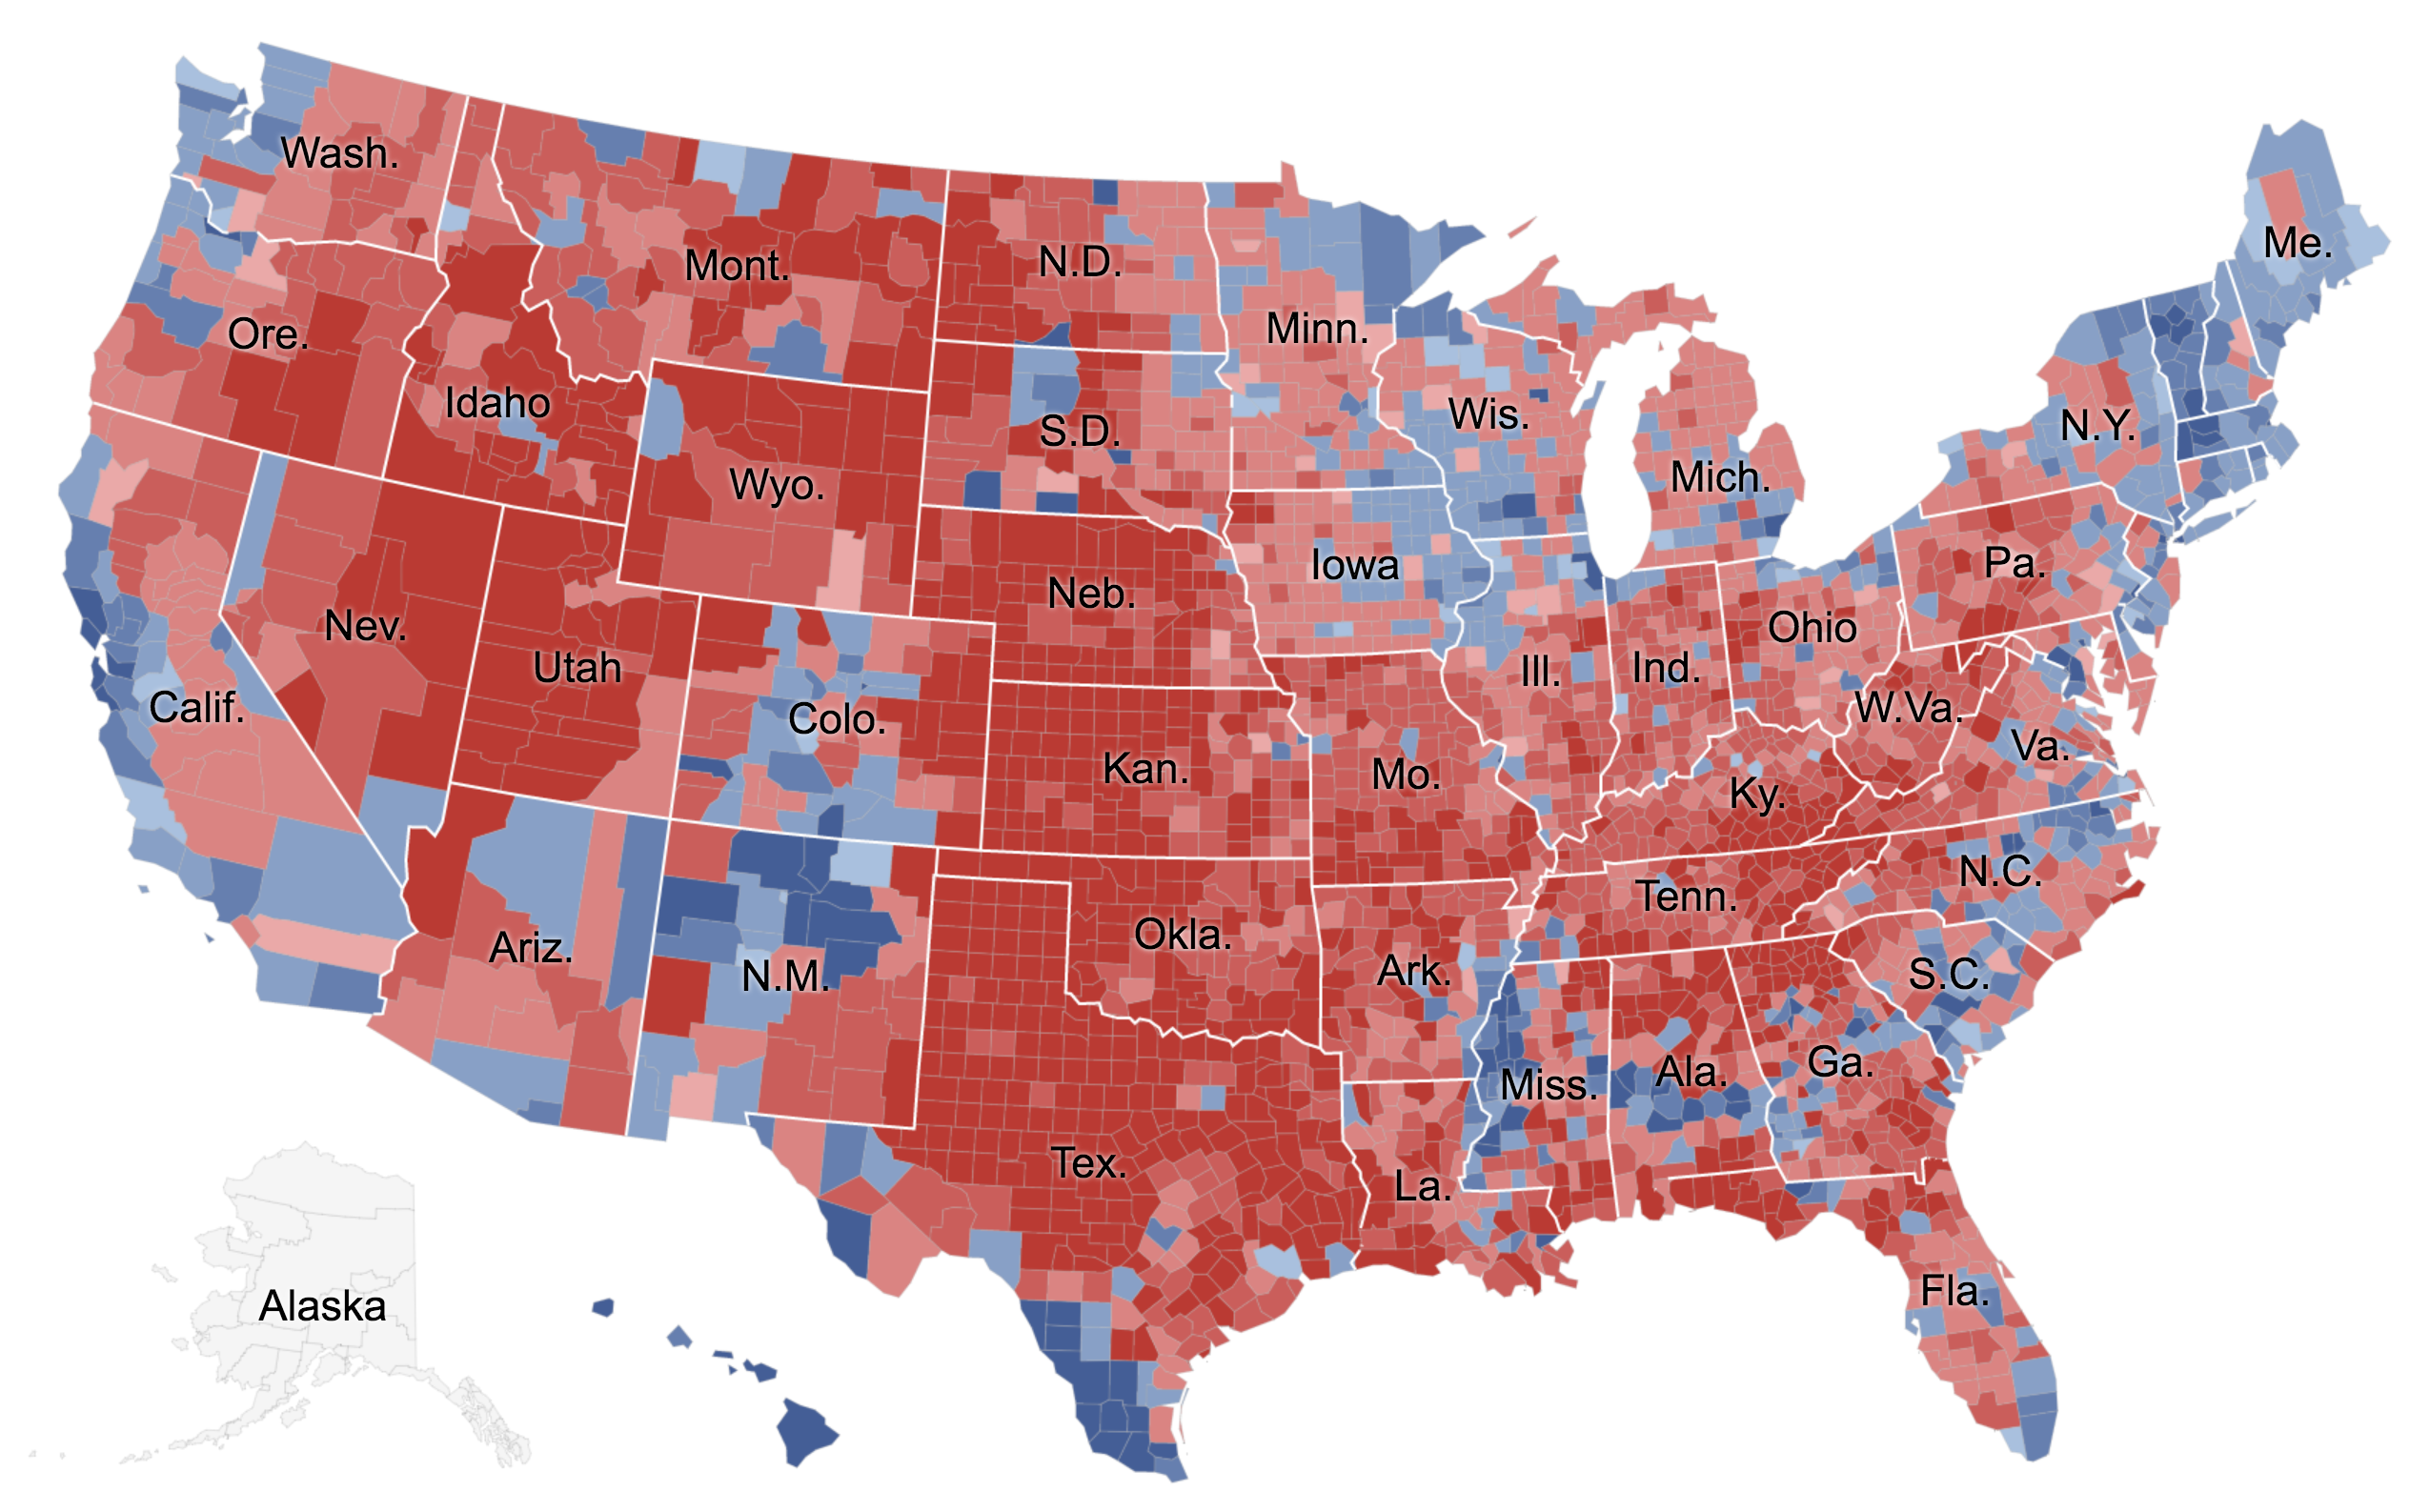 От красного к синему - соотношение голосов между Республиканцами и Демократами в разных графствах в 2020